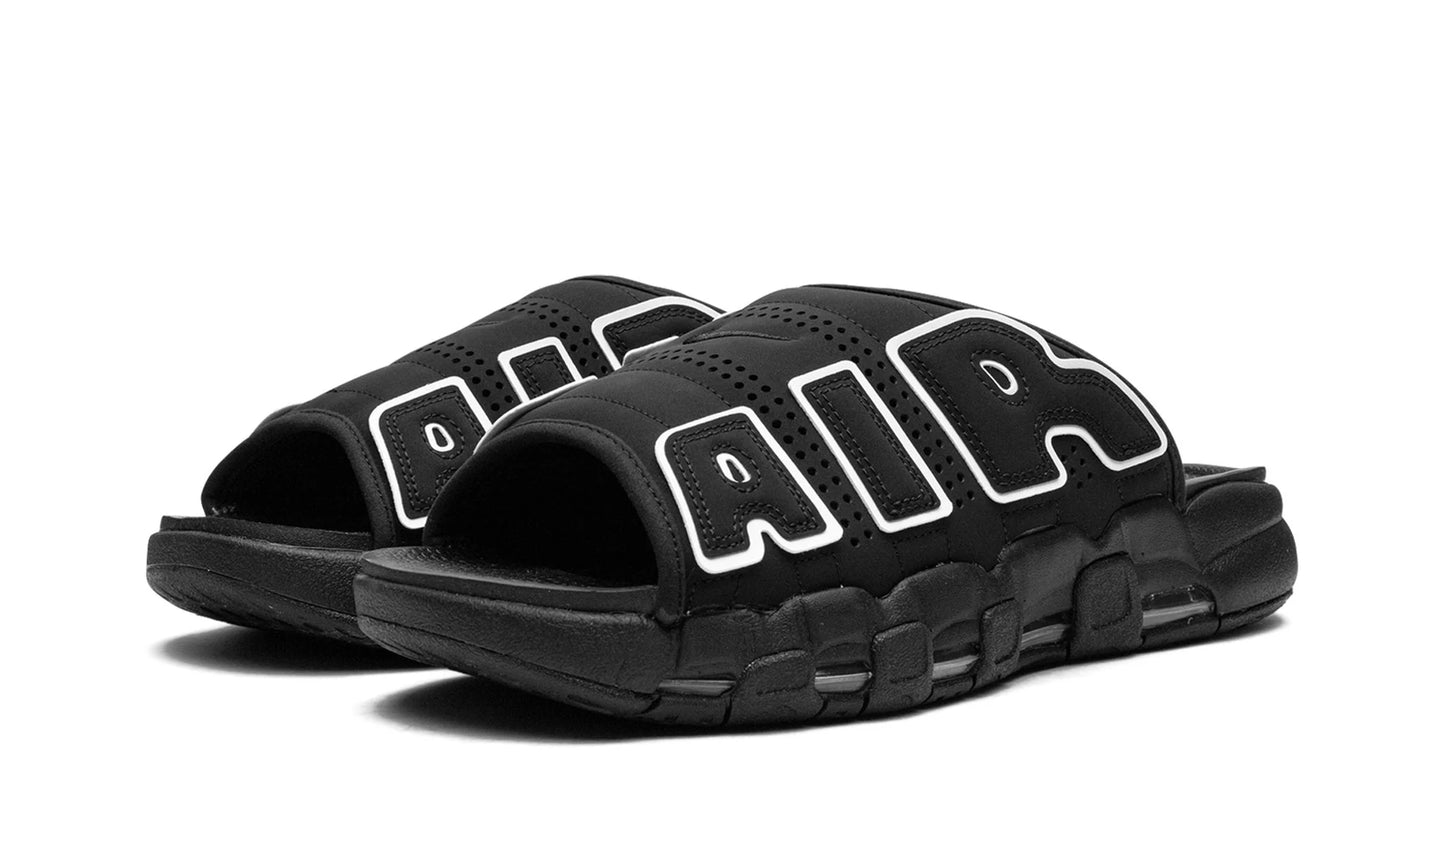 Nike Air More Uptempo Slide "Black/White"